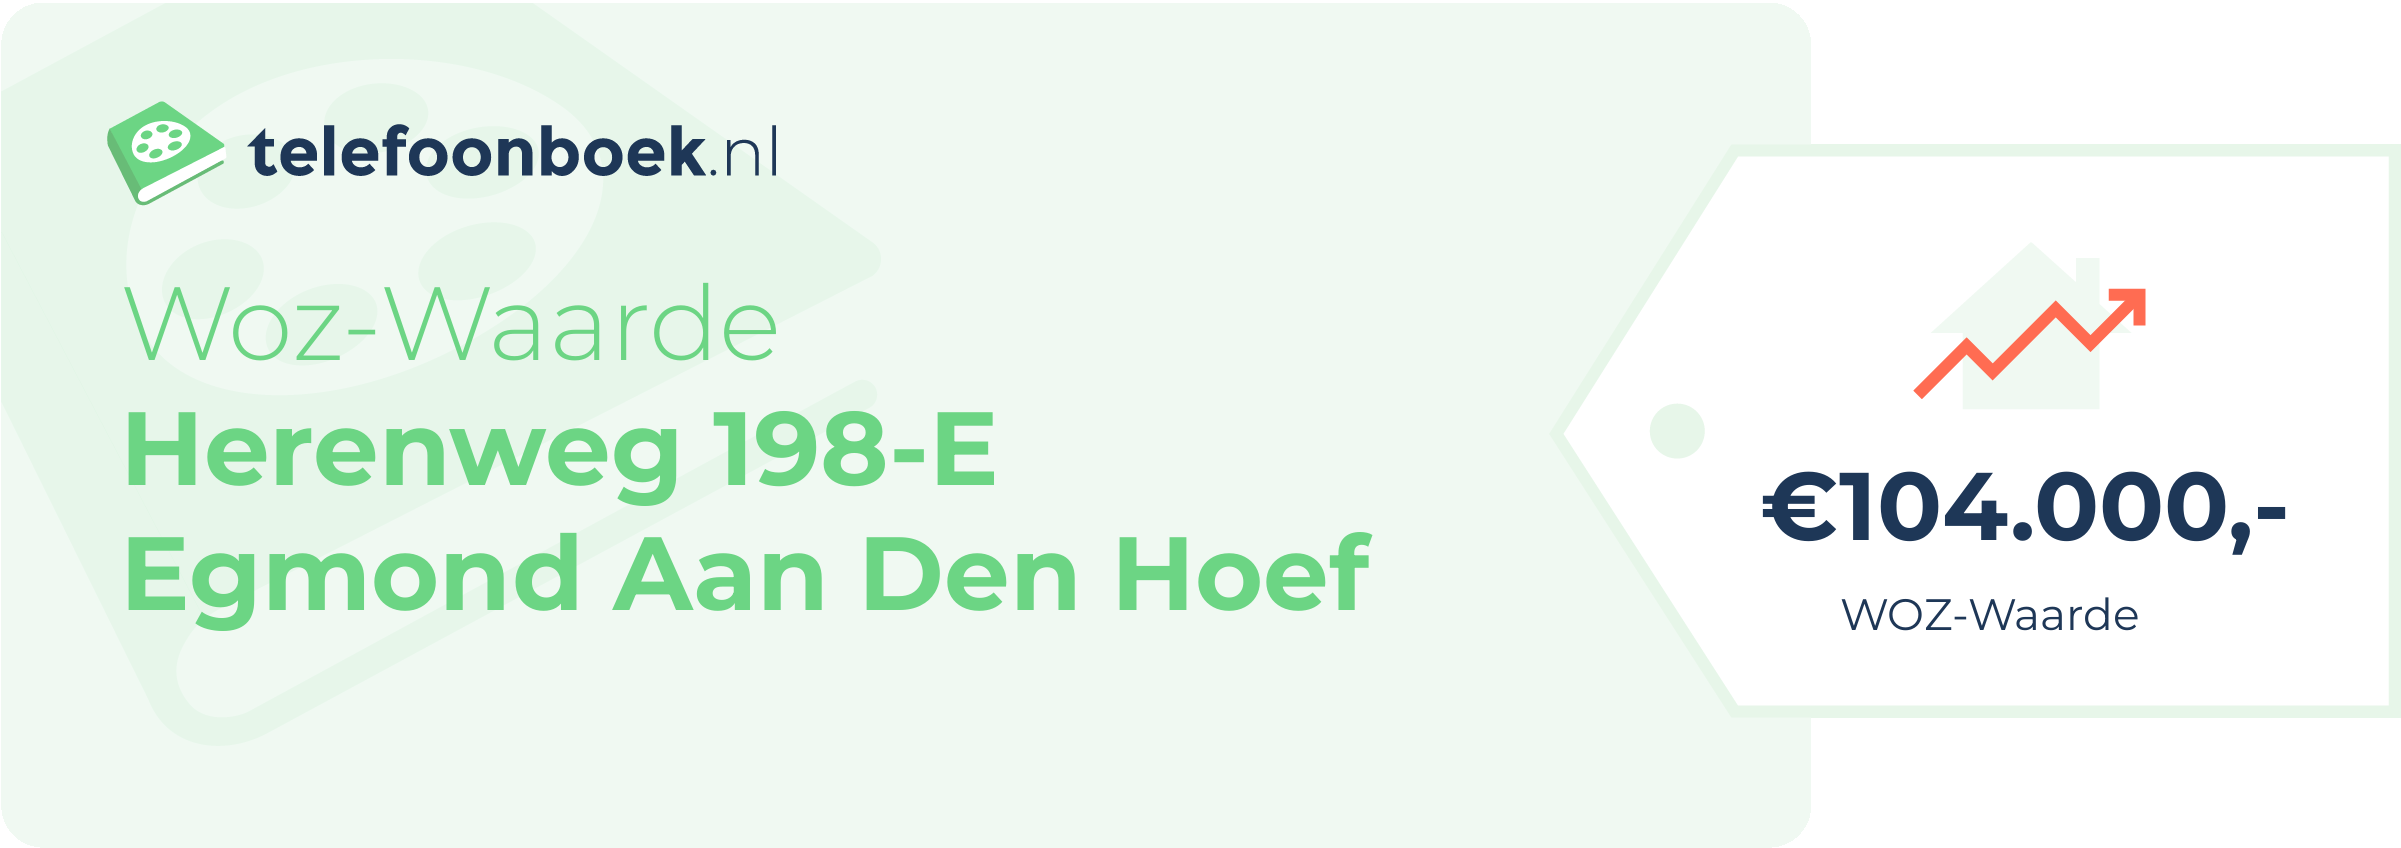 WOZ-waarde Herenweg 198-E Egmond Aan Den Hoef